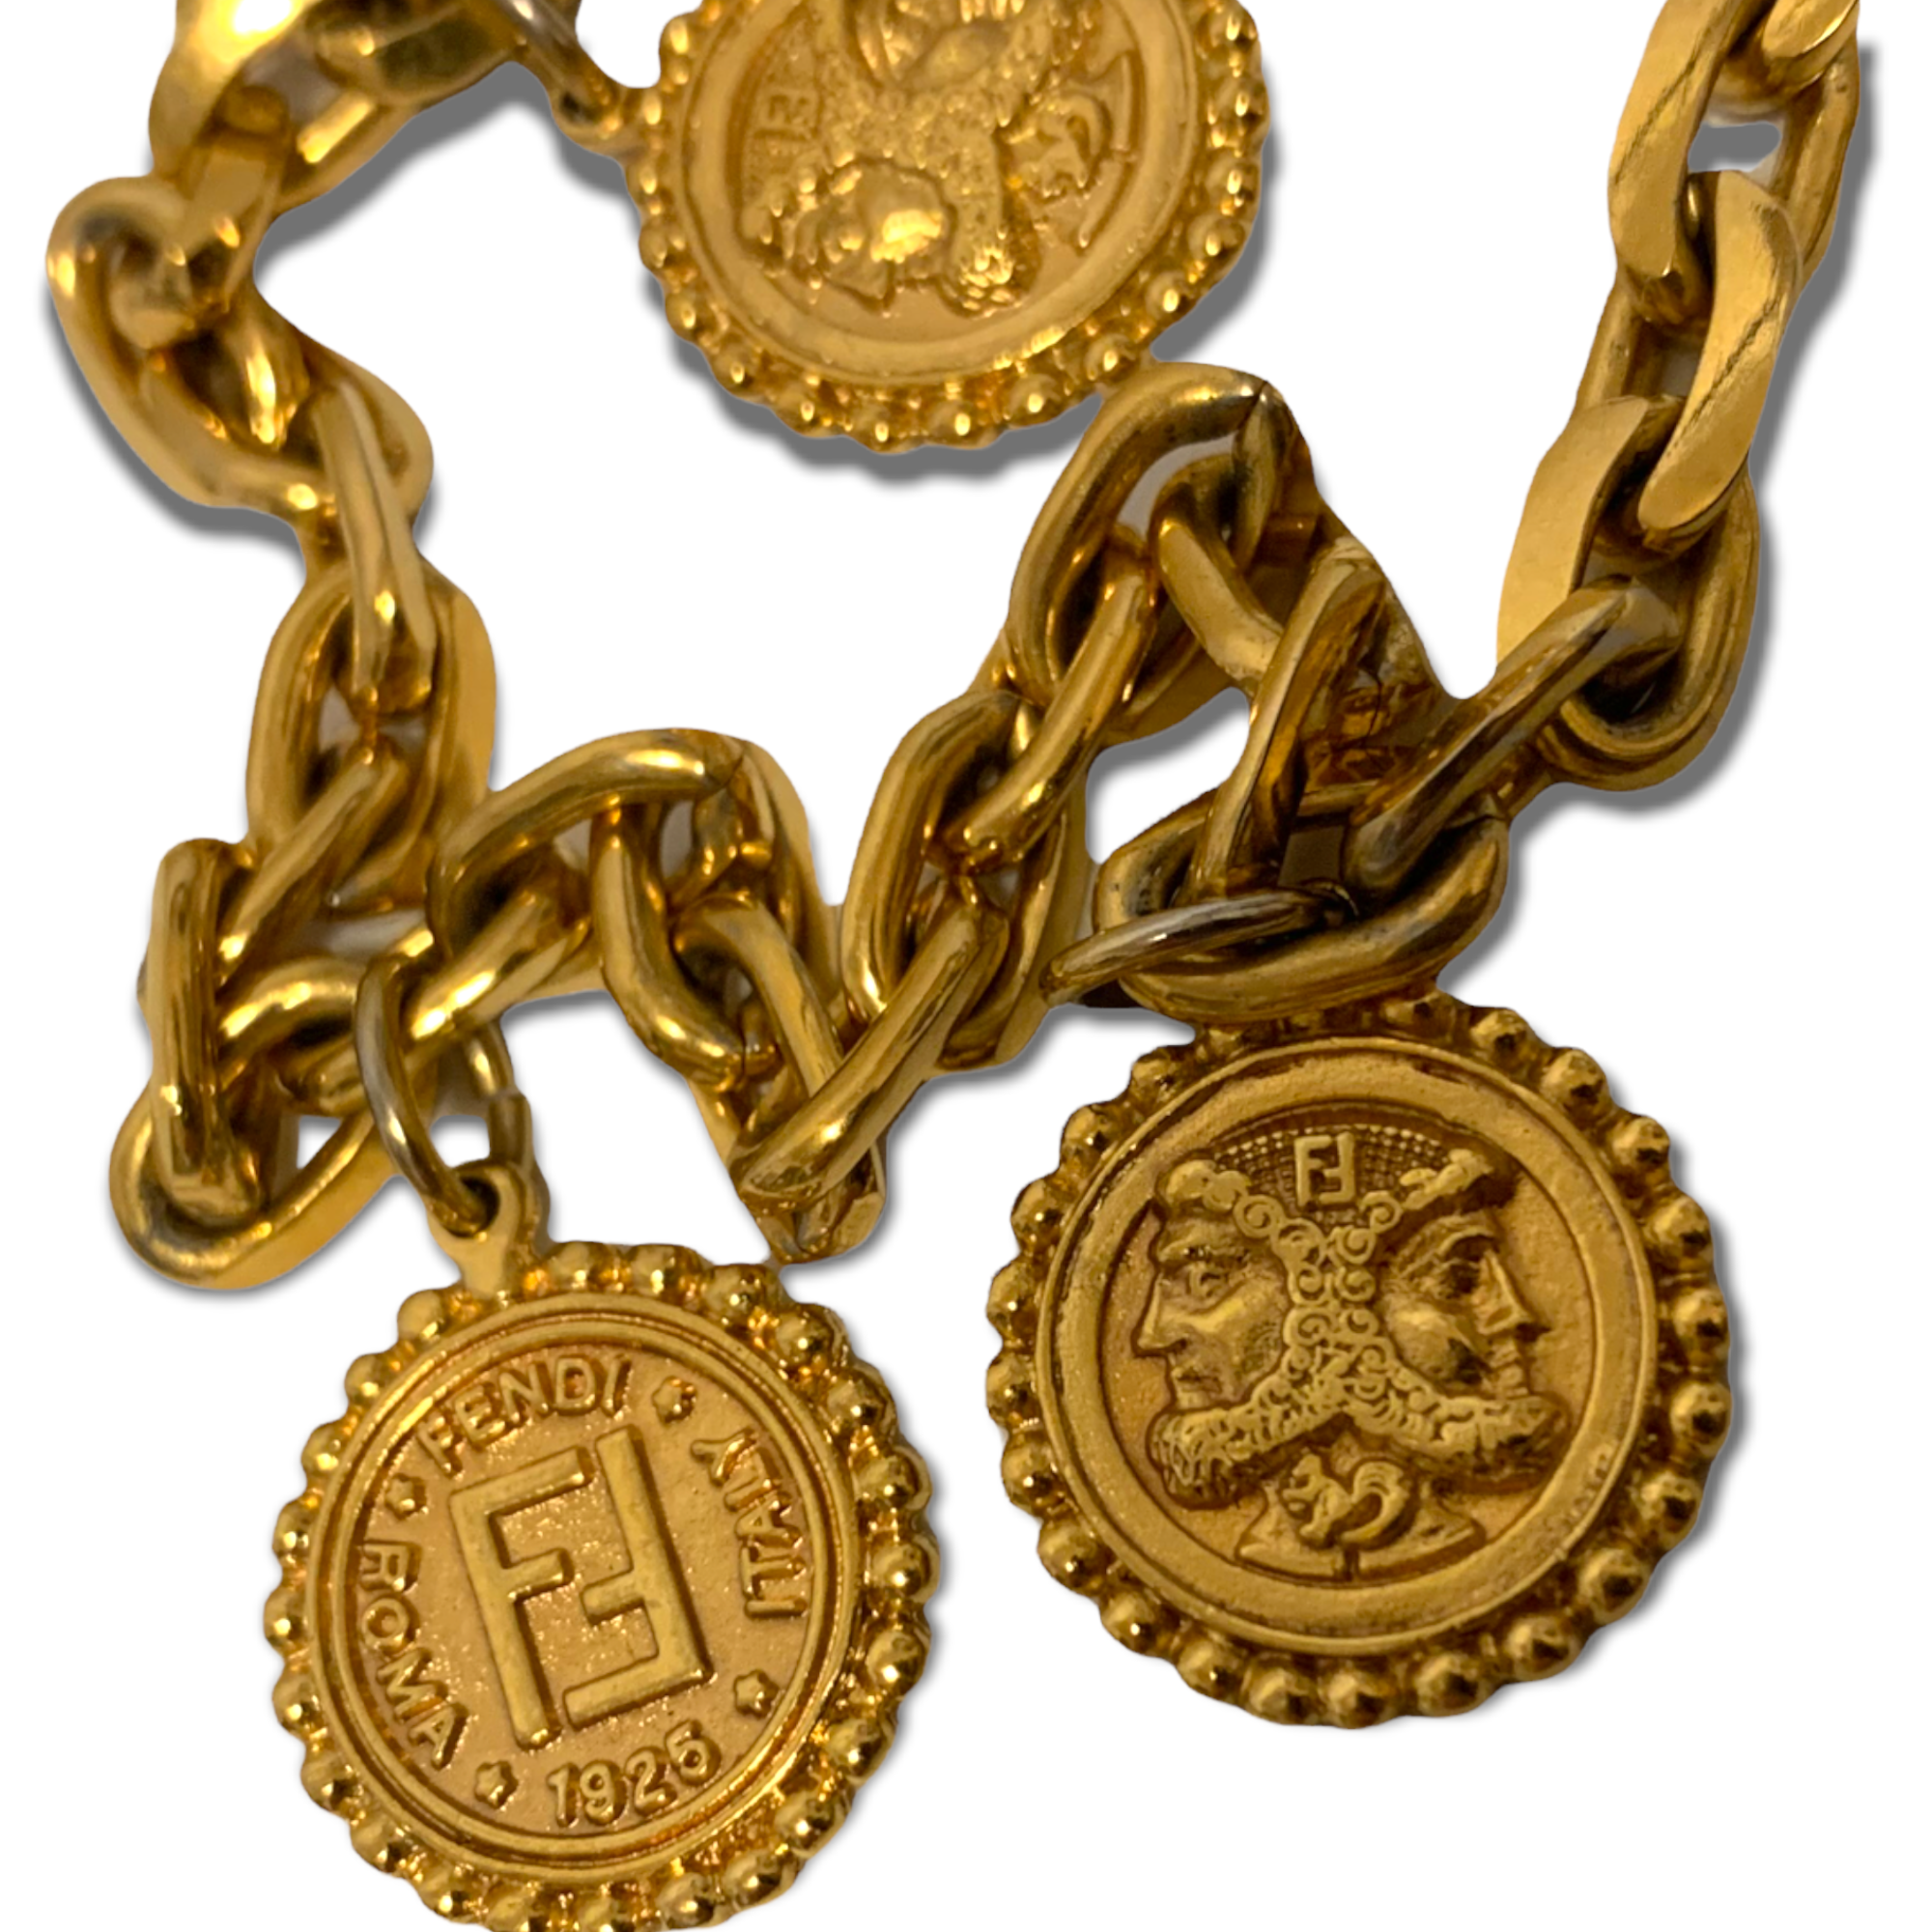 Fendi Gold-Tone Vintage Janus Roman Coin Chain Necklace